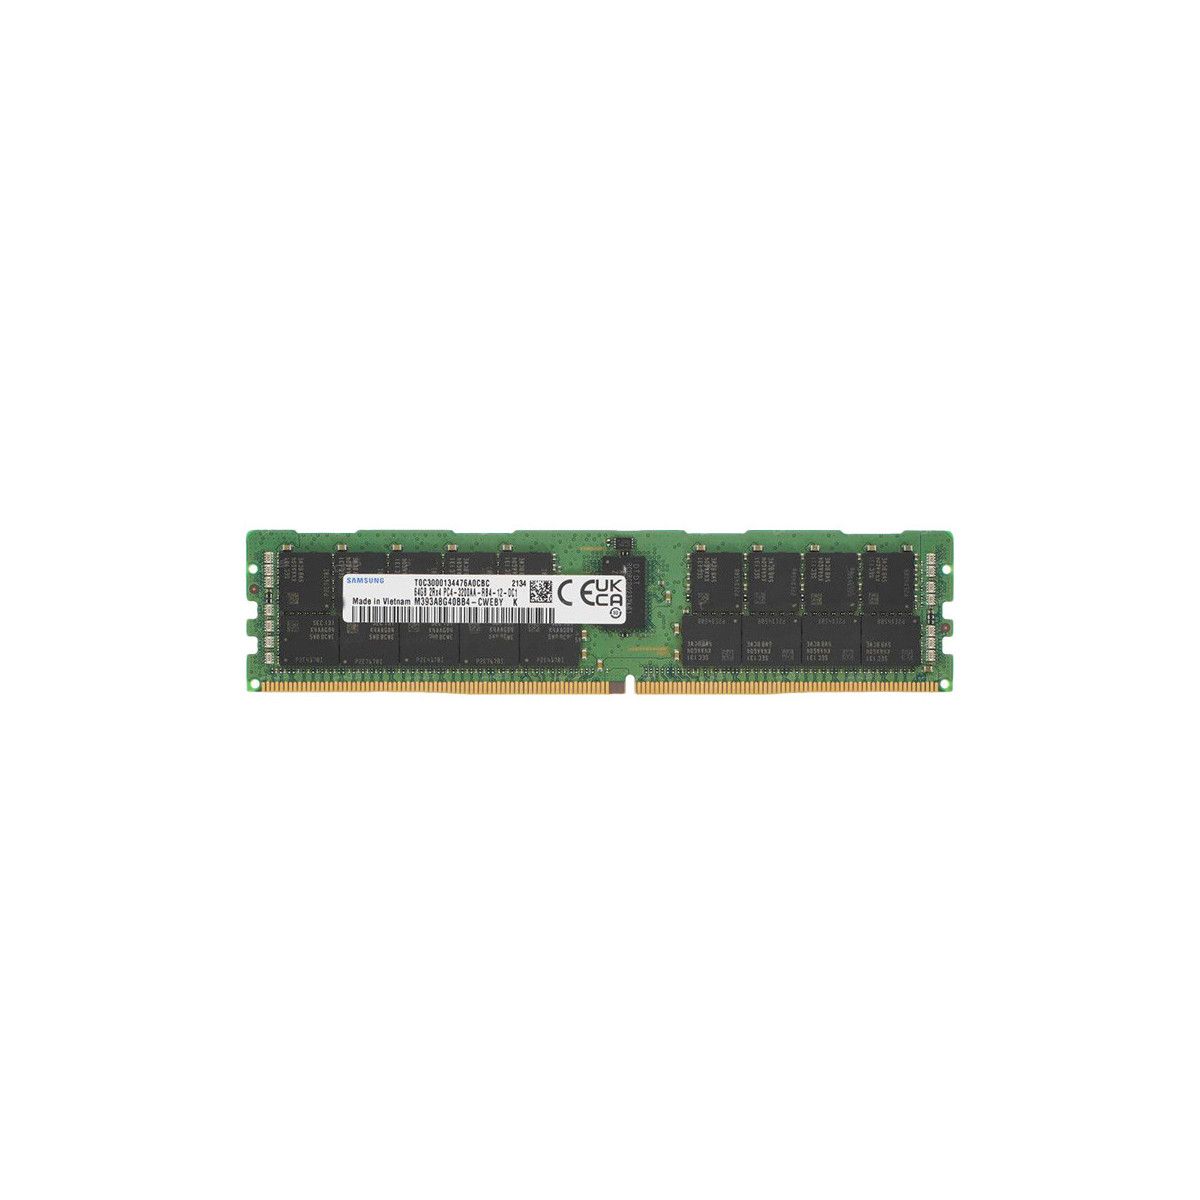 AA799110-MS - Memstar 1x 64GB DDR4-3200 RDIMM PC4-25600R - Memorie OEM compatibilă Mem-Star 1 - Memstar 